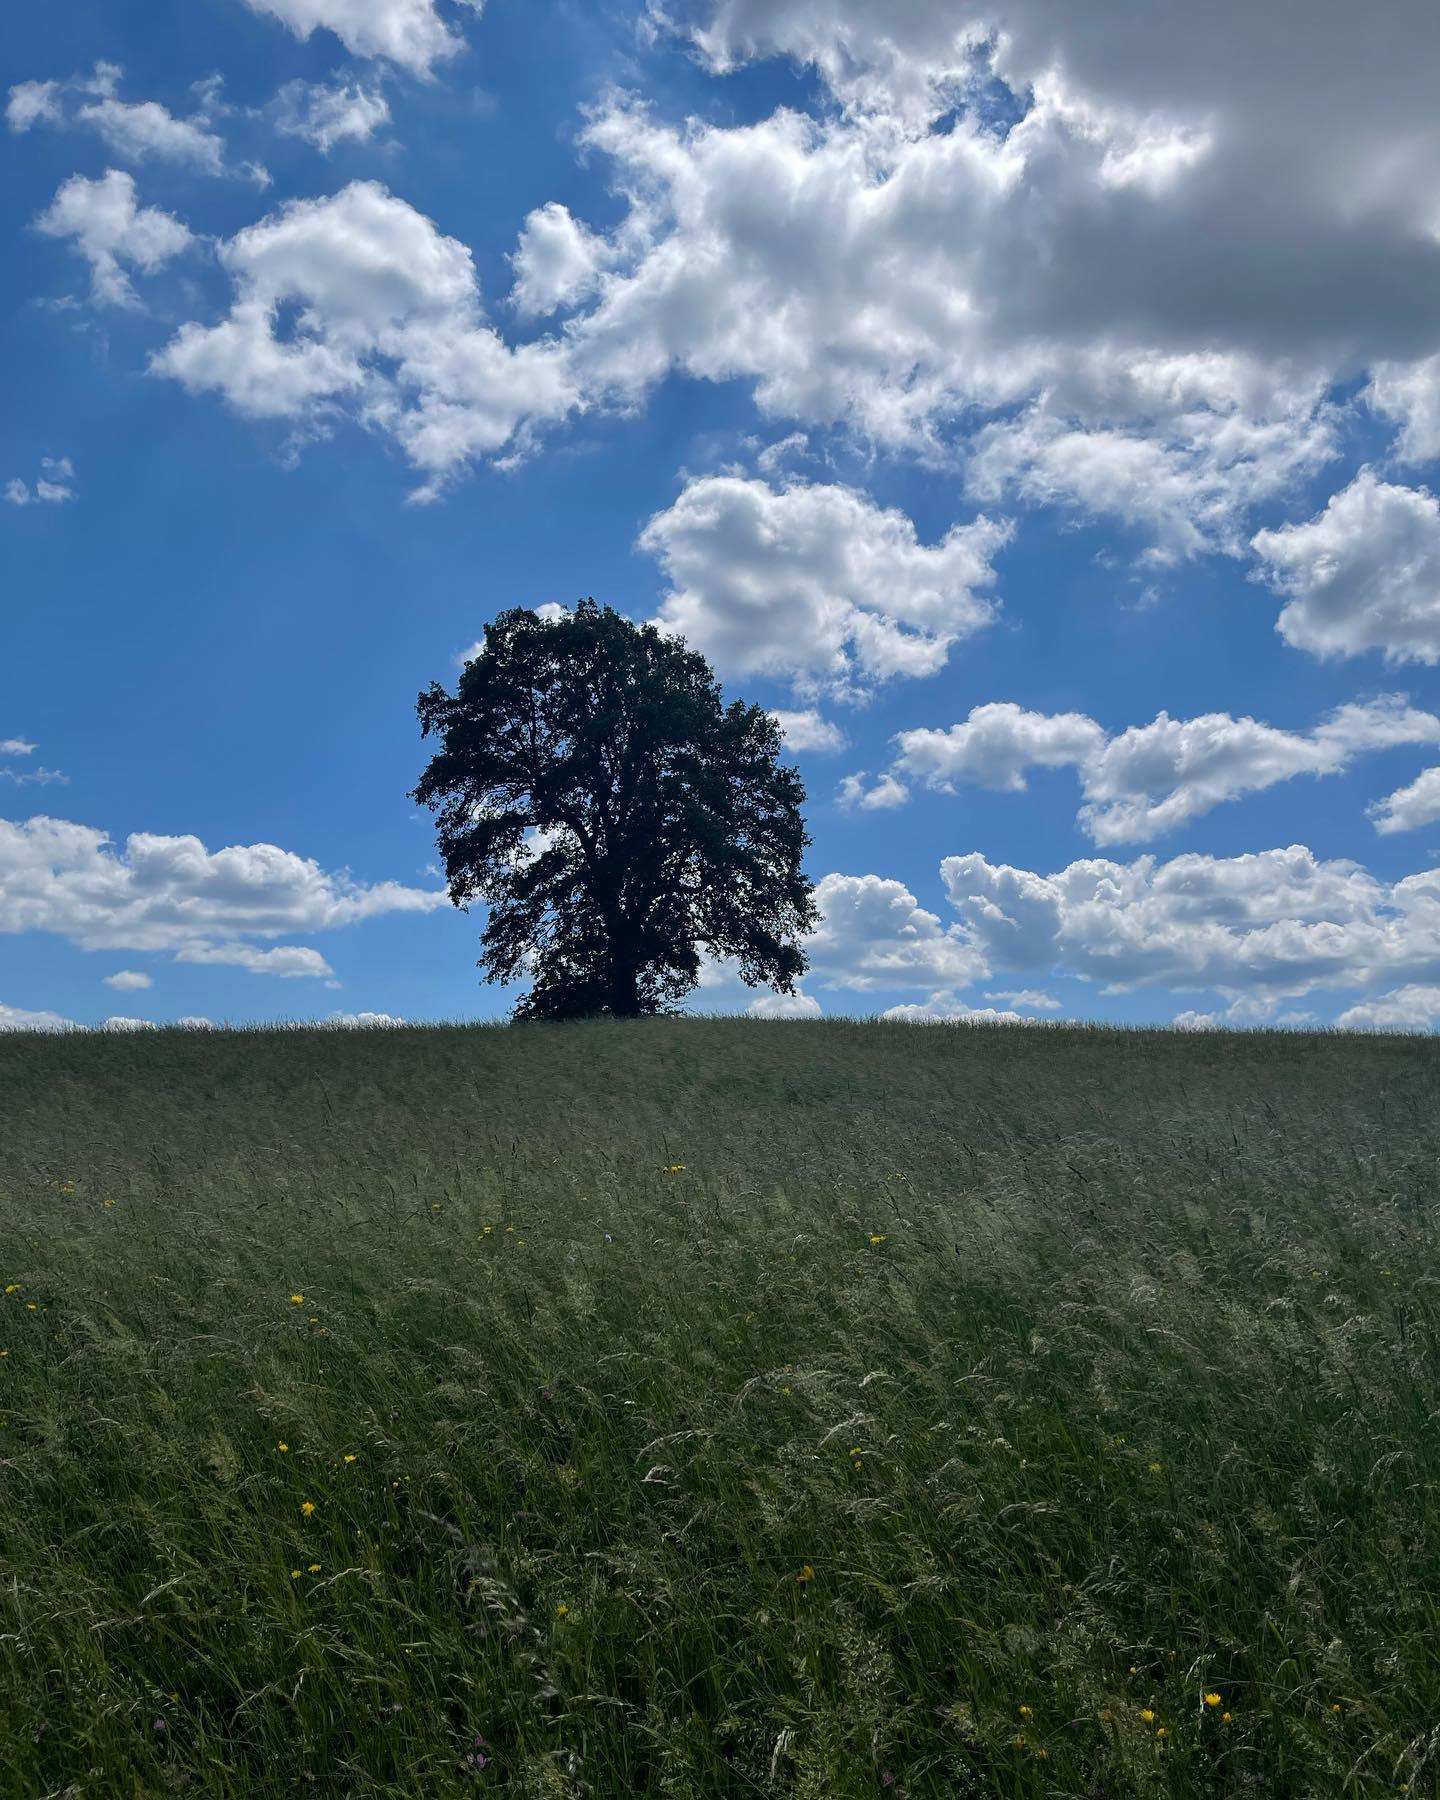 Sensationell schön, so ein Solitär. 🌳
#baum #solitaerbaum #tree #nature #natur #radausflug #radfahren #wochenende #wienerwald #blumenwiese #iphonephotography #withmylove #wolken #wolkenhimmel #sky